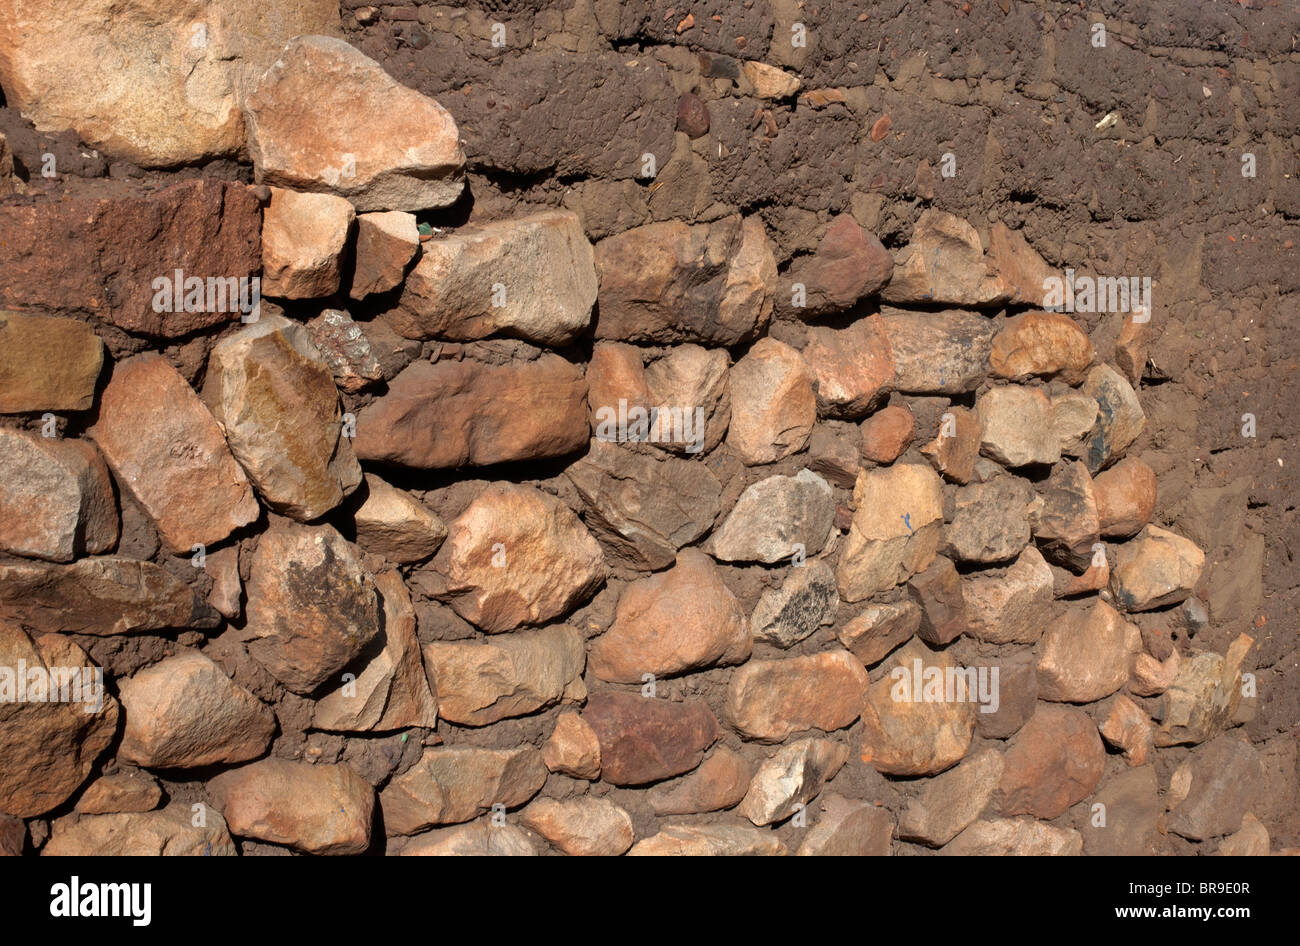 Et pierre, brique de boue (Adobe), forme un contraste de matériaux de construction pour les murs d'une maison à Pucara, Pérou. Banque D'Images